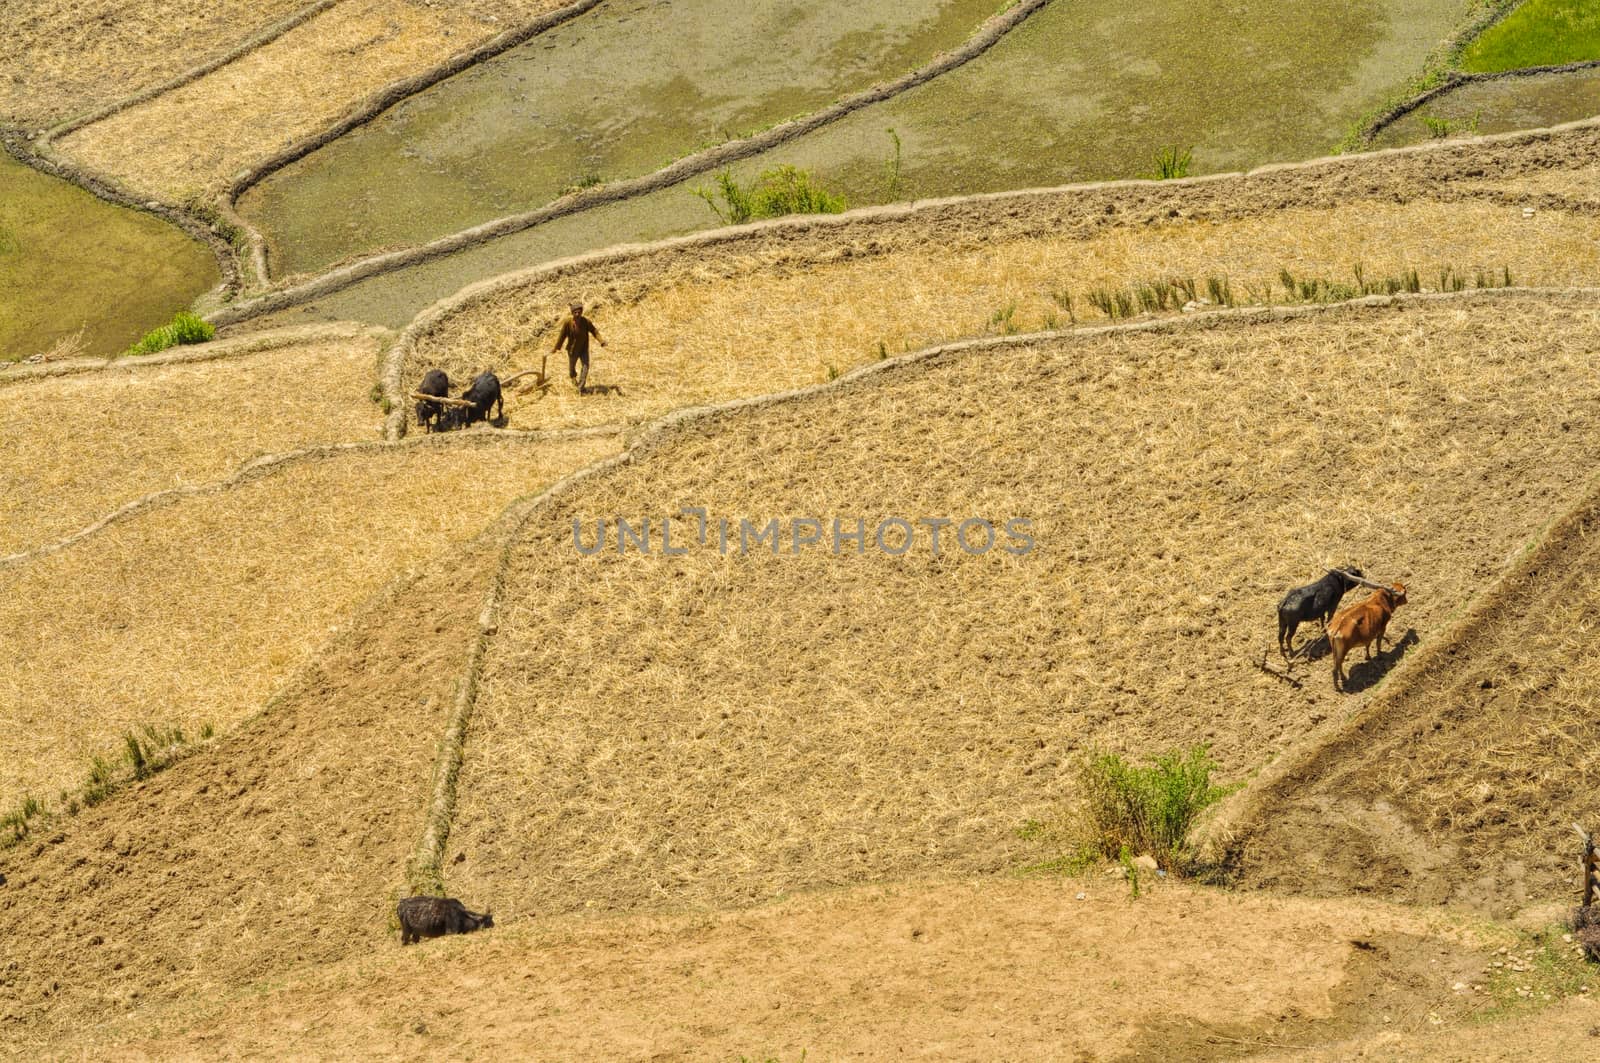 Ploughing fields in Nepal by MichalKnitl